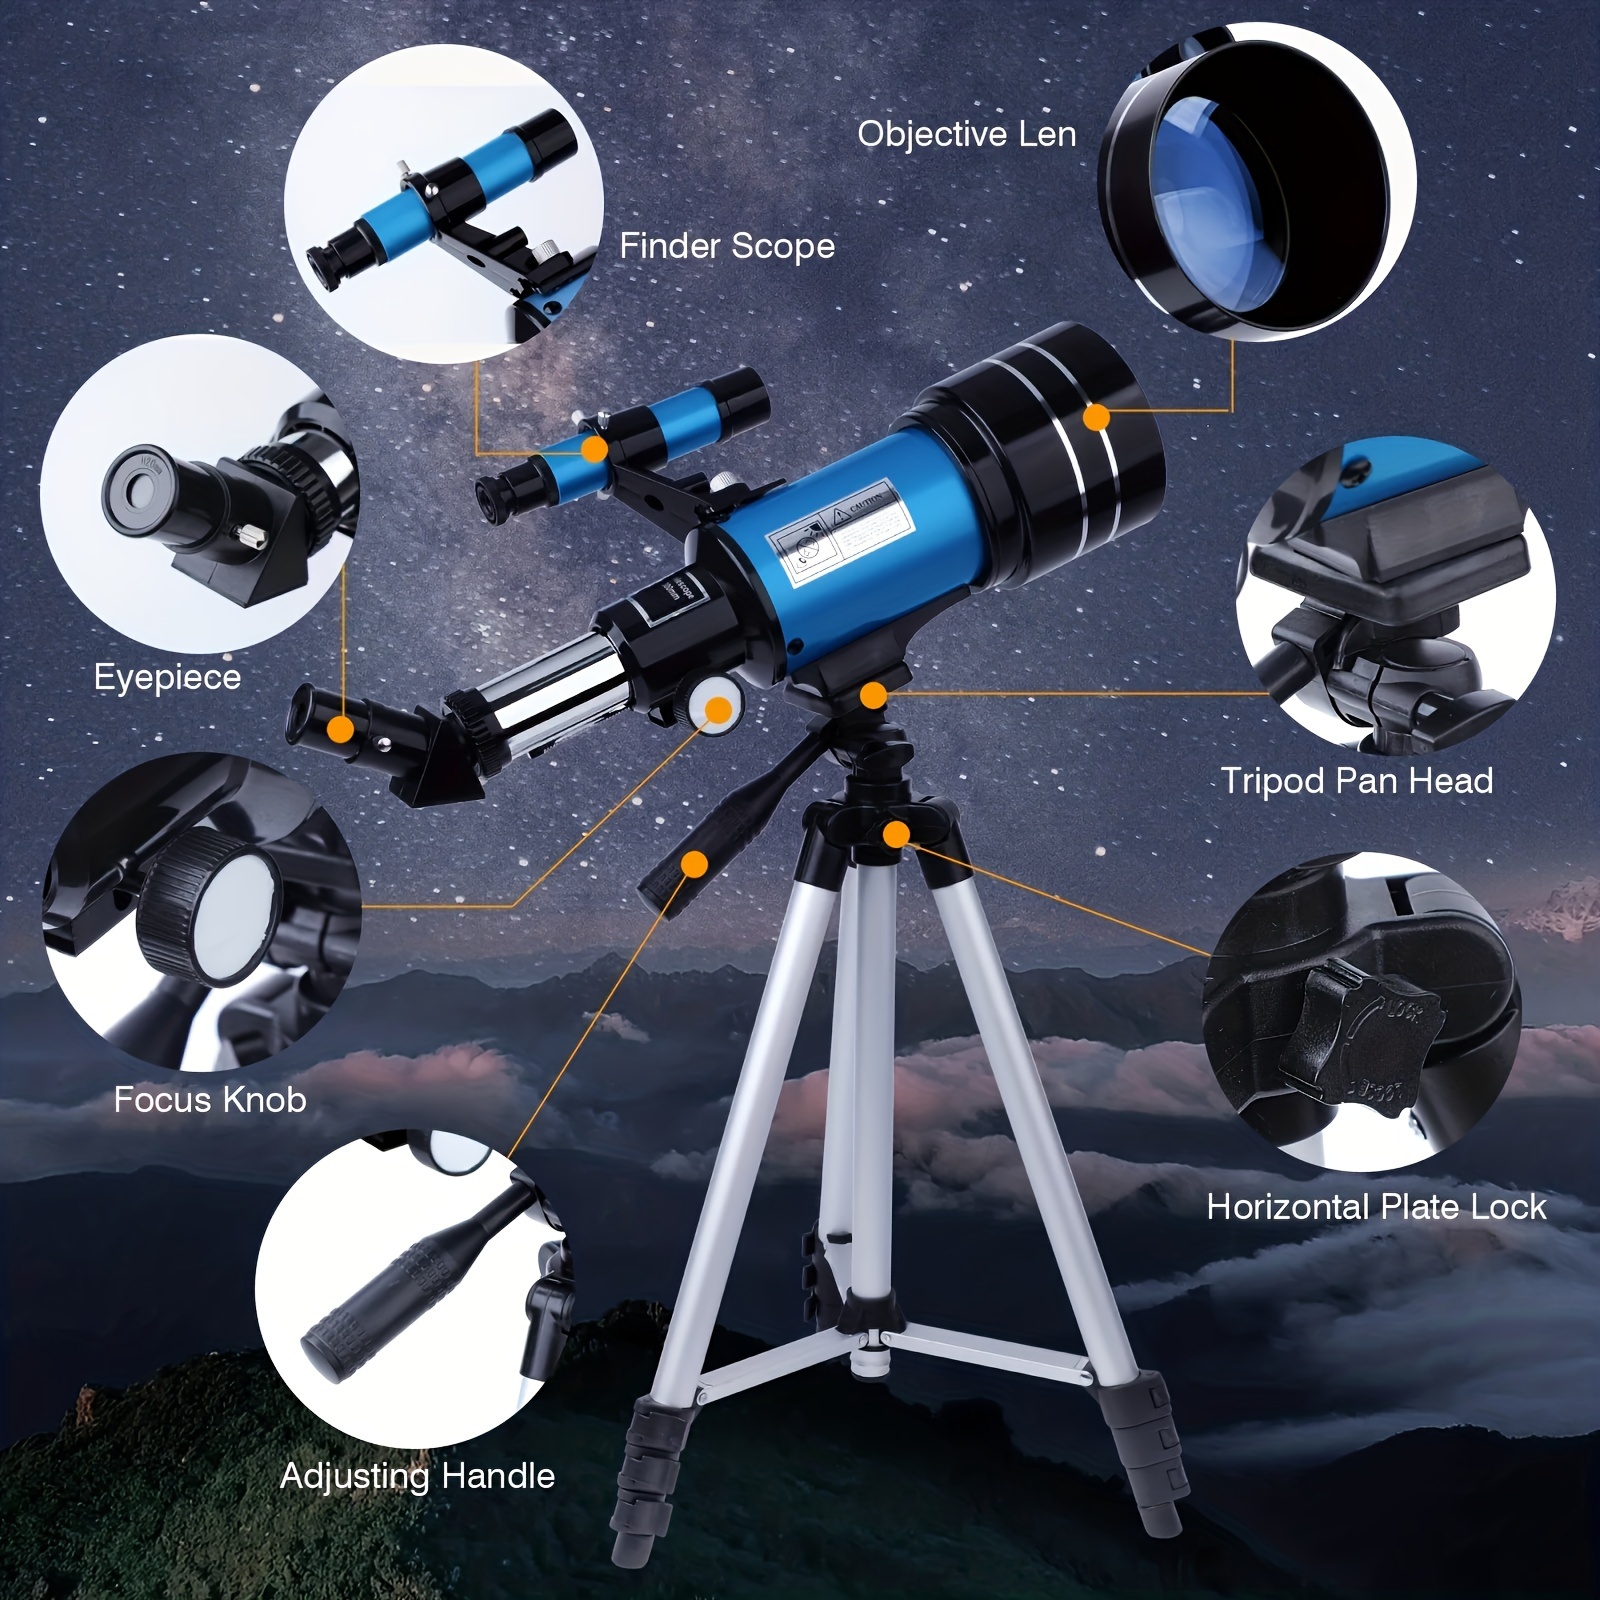 𝟮𝟎𝟮𝟮 𝞜𝗘𝗪 Telescopio Astronómico Zoom 150X HD 300/70 mm de